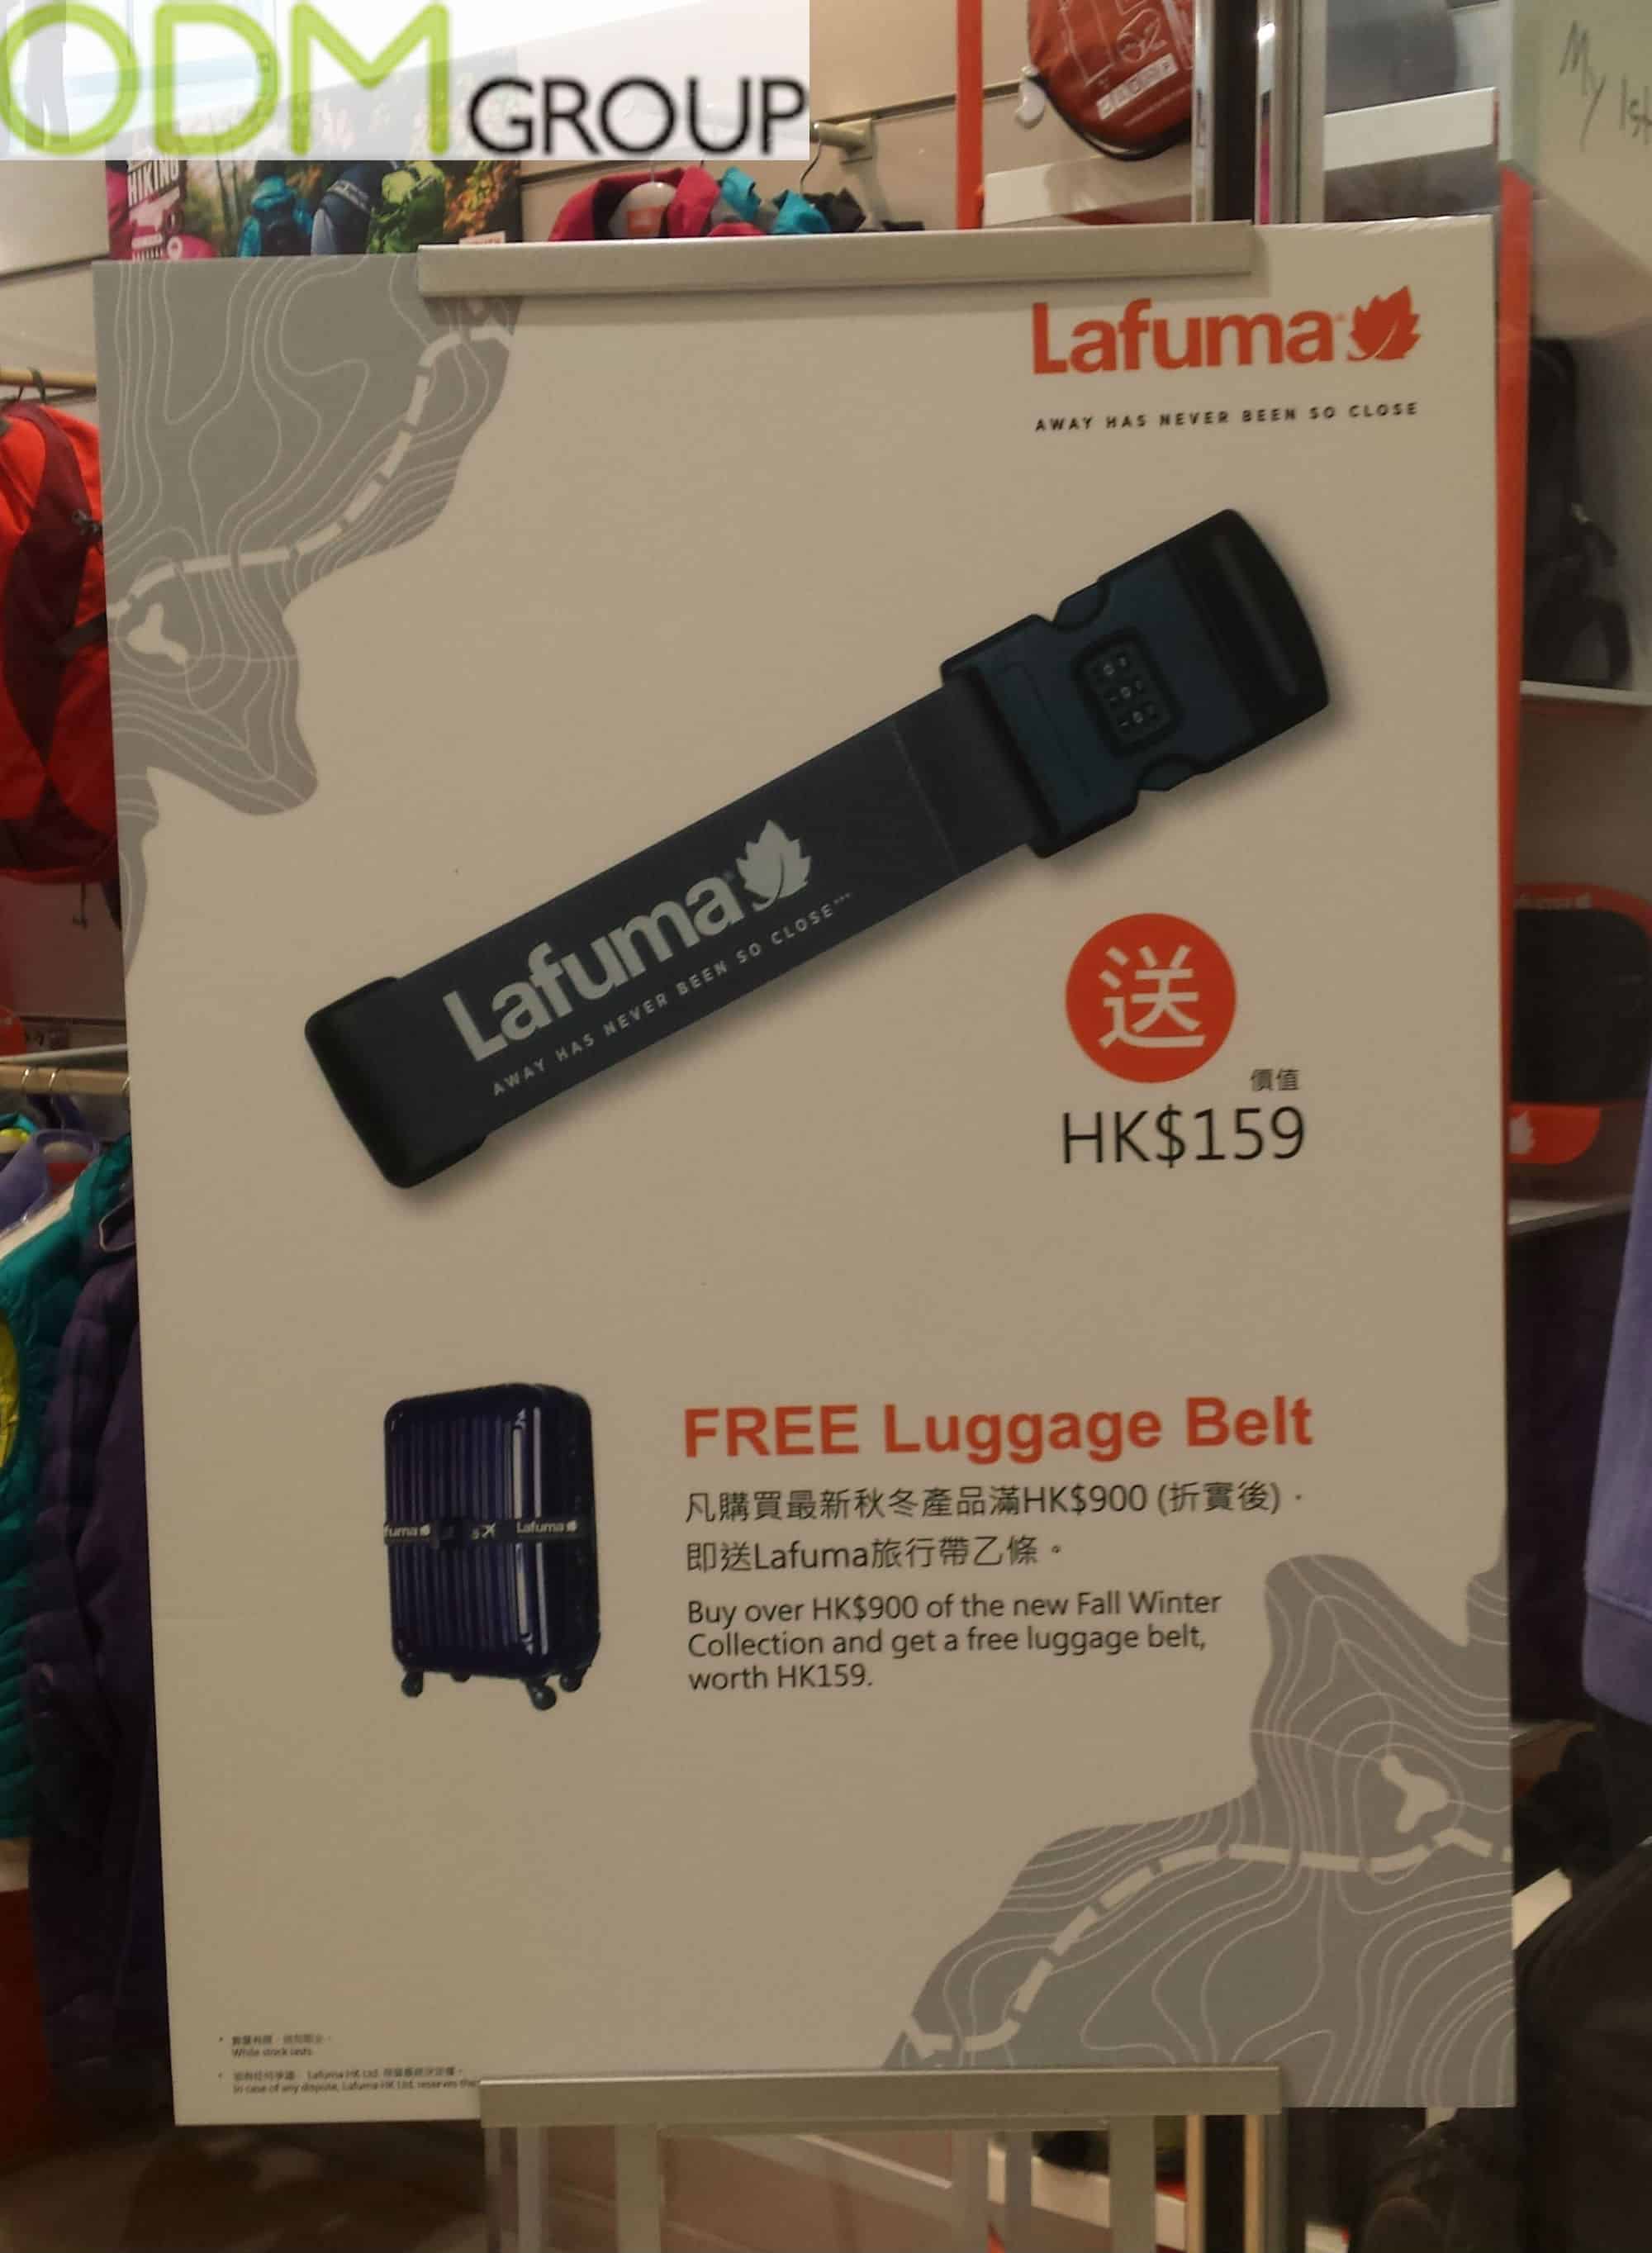 Travel Promotional Products: Lafuma Free Luggage Belt